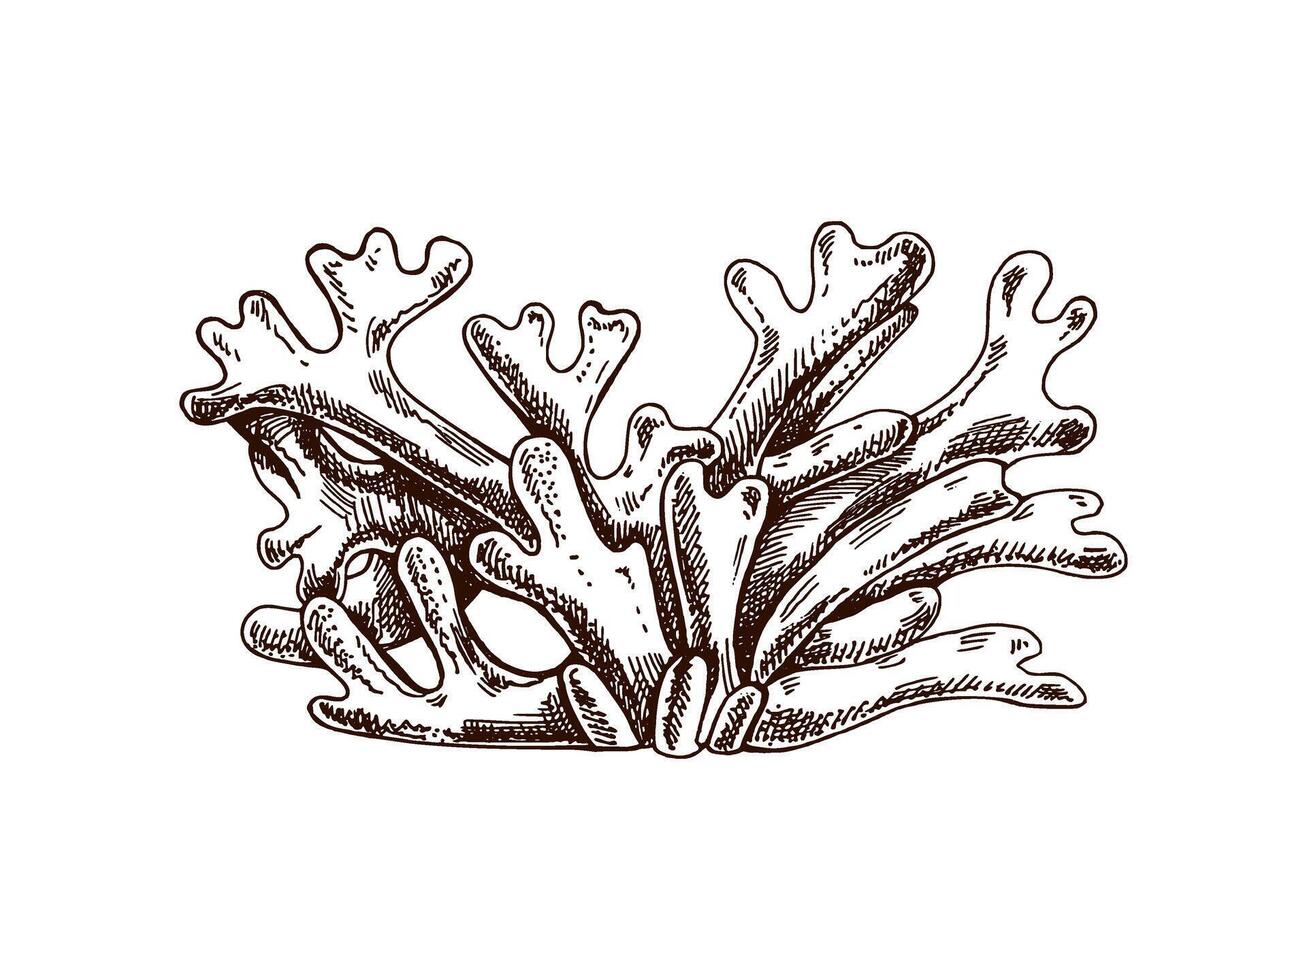 ritad för hand alger, marin växter. ett graverat vatten element. marin samling. vektor